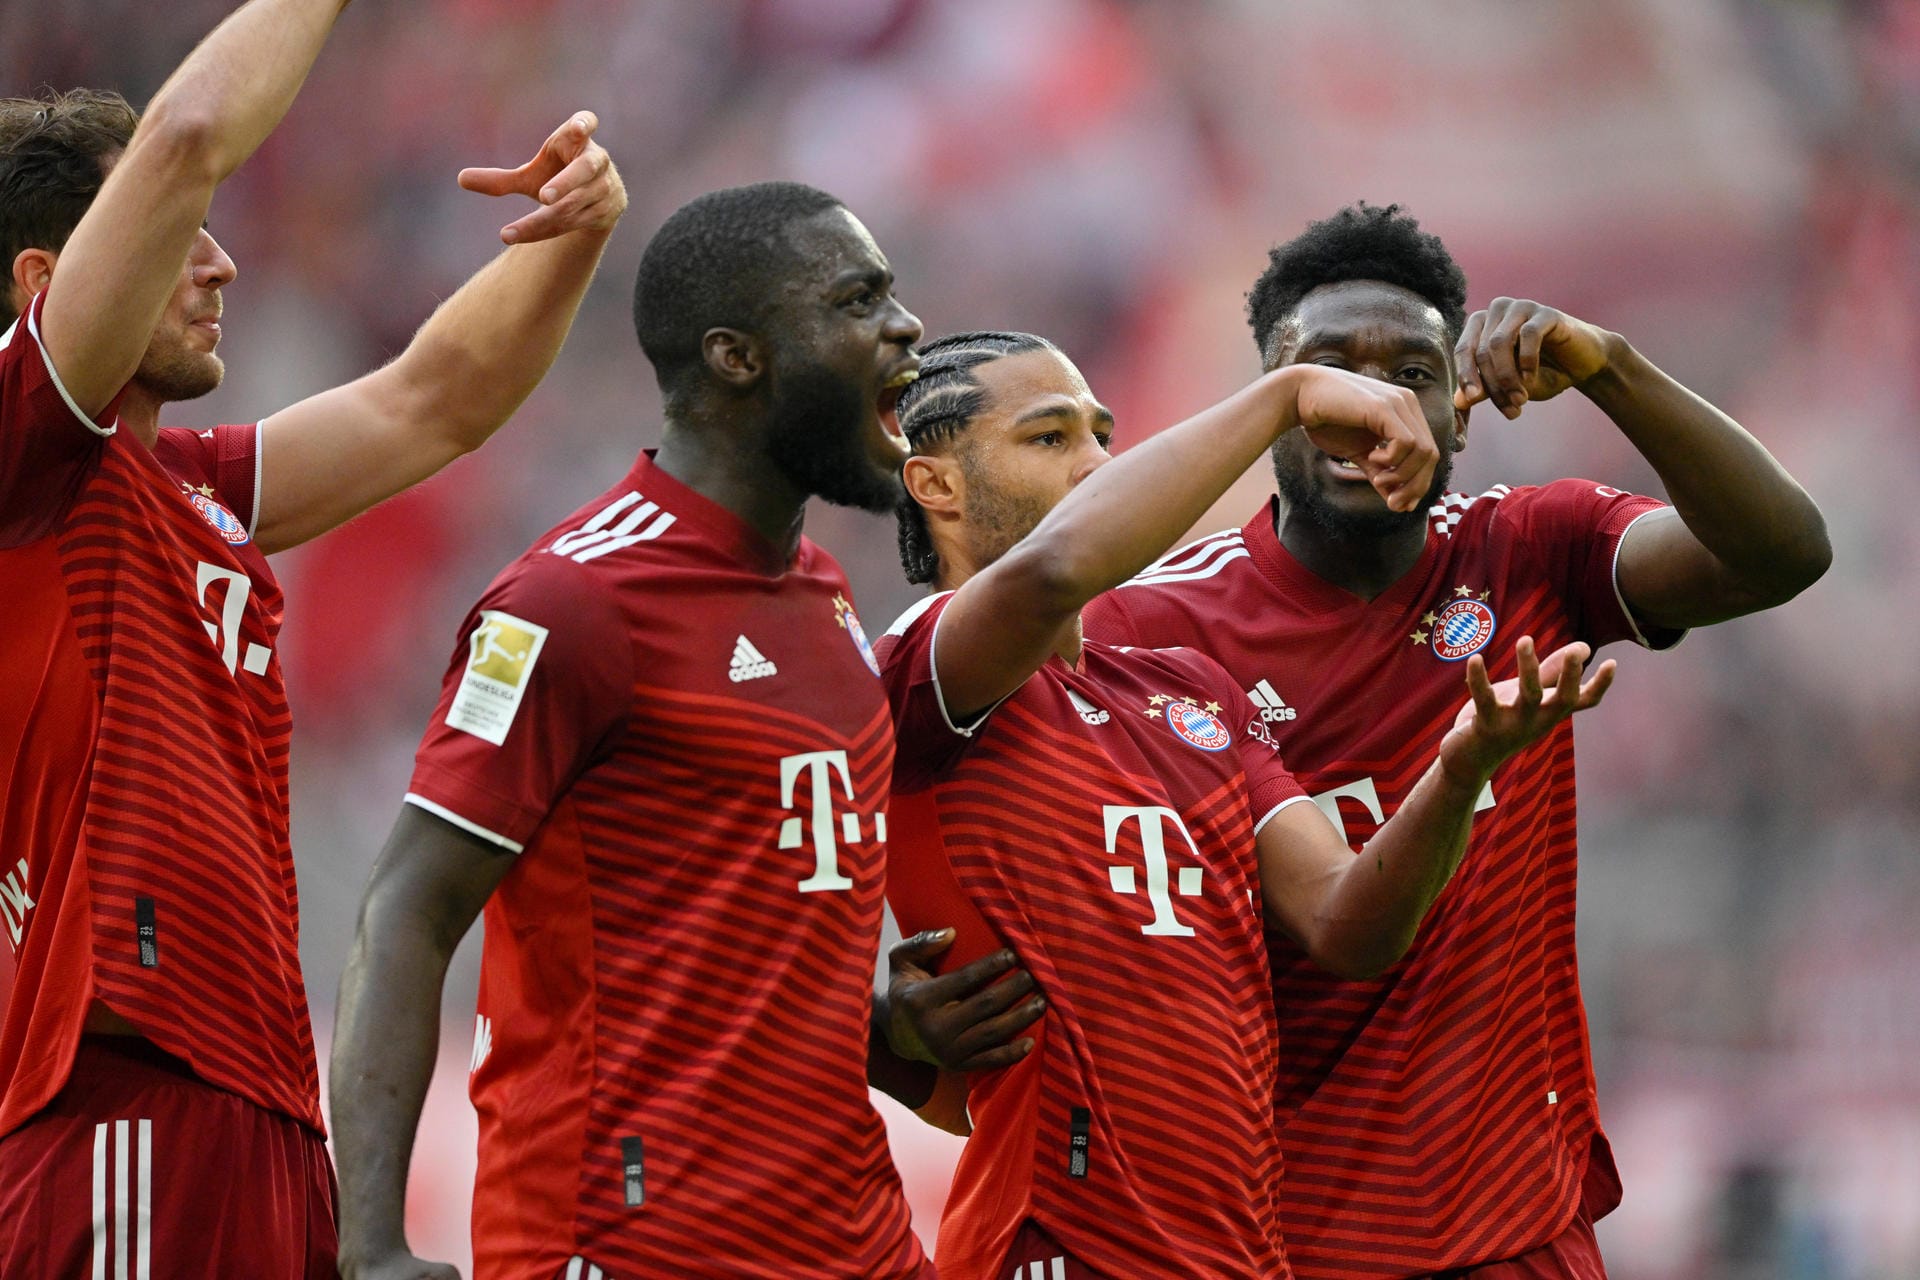 Der FC Bayern krönt sich gegen Borussia Dortmund zum zehnten Mal in Folge zum Deutschen Meister. Serge Gnabry sammelt reichlich Argumente für die Vertragsverhandlungen, Thomas Müller findet rechtzeitig sein Sonar. Die Noten für die Münchner.